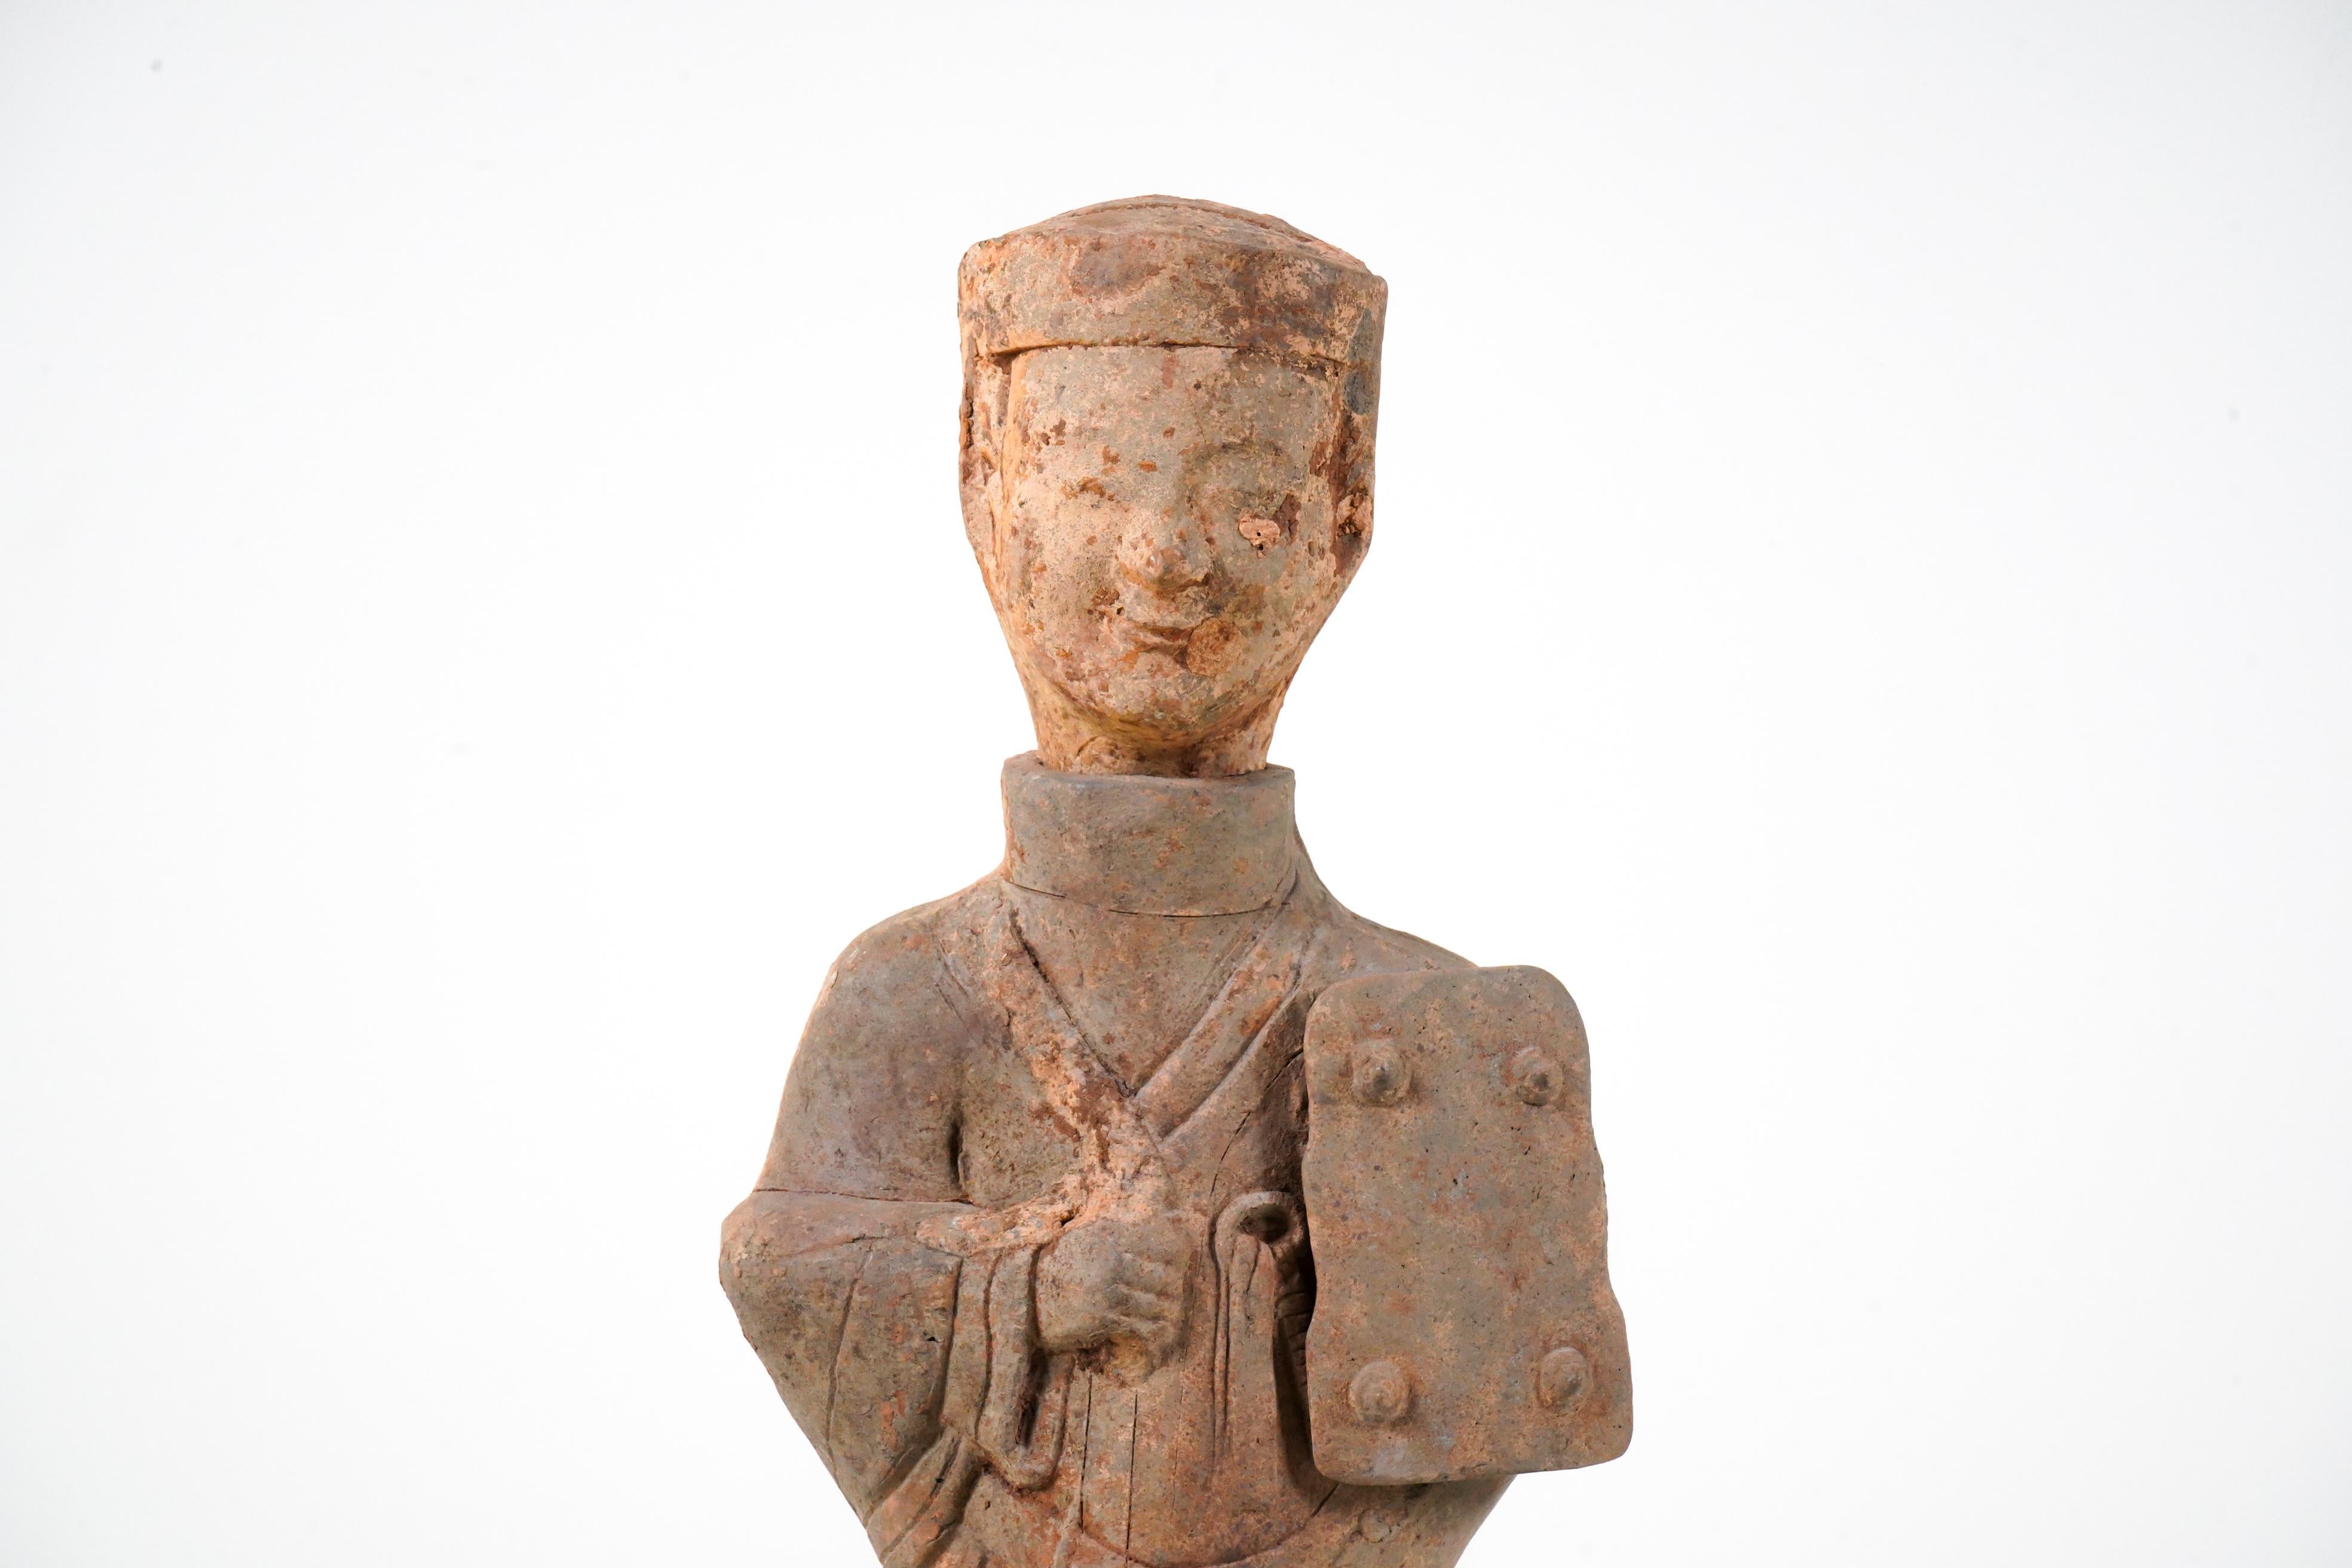 Eine große chinesische Terrakotta-Grabfigur (Ni Yong) aus der Östlichen Han-Dynastie (25-220 n. Chr.), wahrscheinlich aus dem Gebiet des heutigen Sichuan. Es scheint einen Bräutigam in voller Tracht und mit einem Pferdegeschirr in der Hand